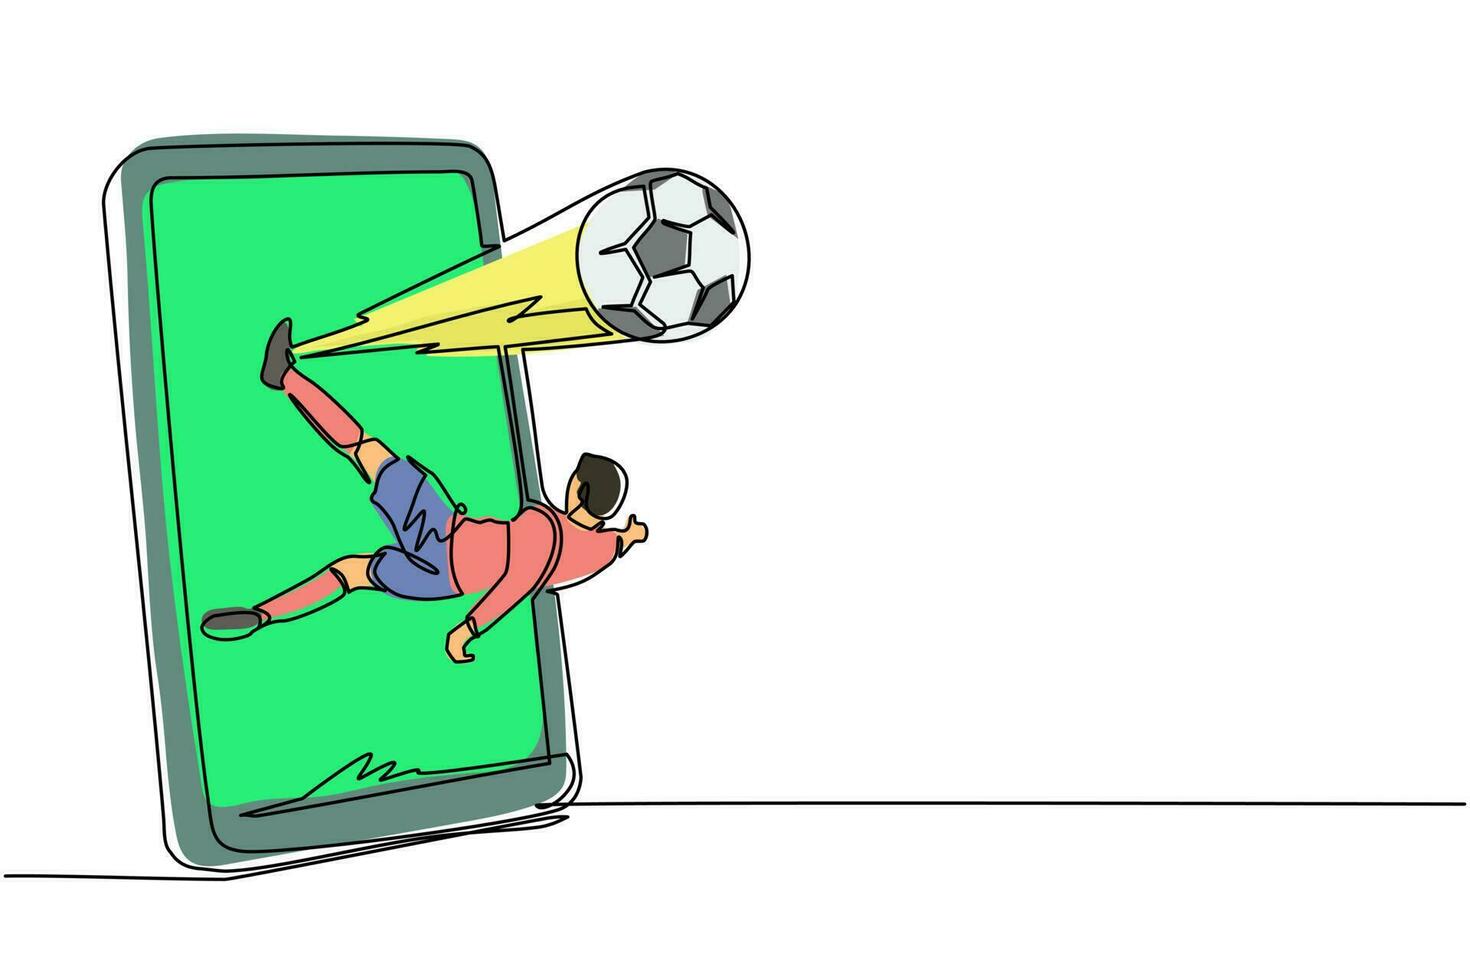 kontinuerlig en rad ritning fotbollsspelare sparkar några overhead bollen från smartphone skärmen. mobil sport spela match. online fotbollsspel med live-mobilapp. en rad rita design vektorgrafik vektor